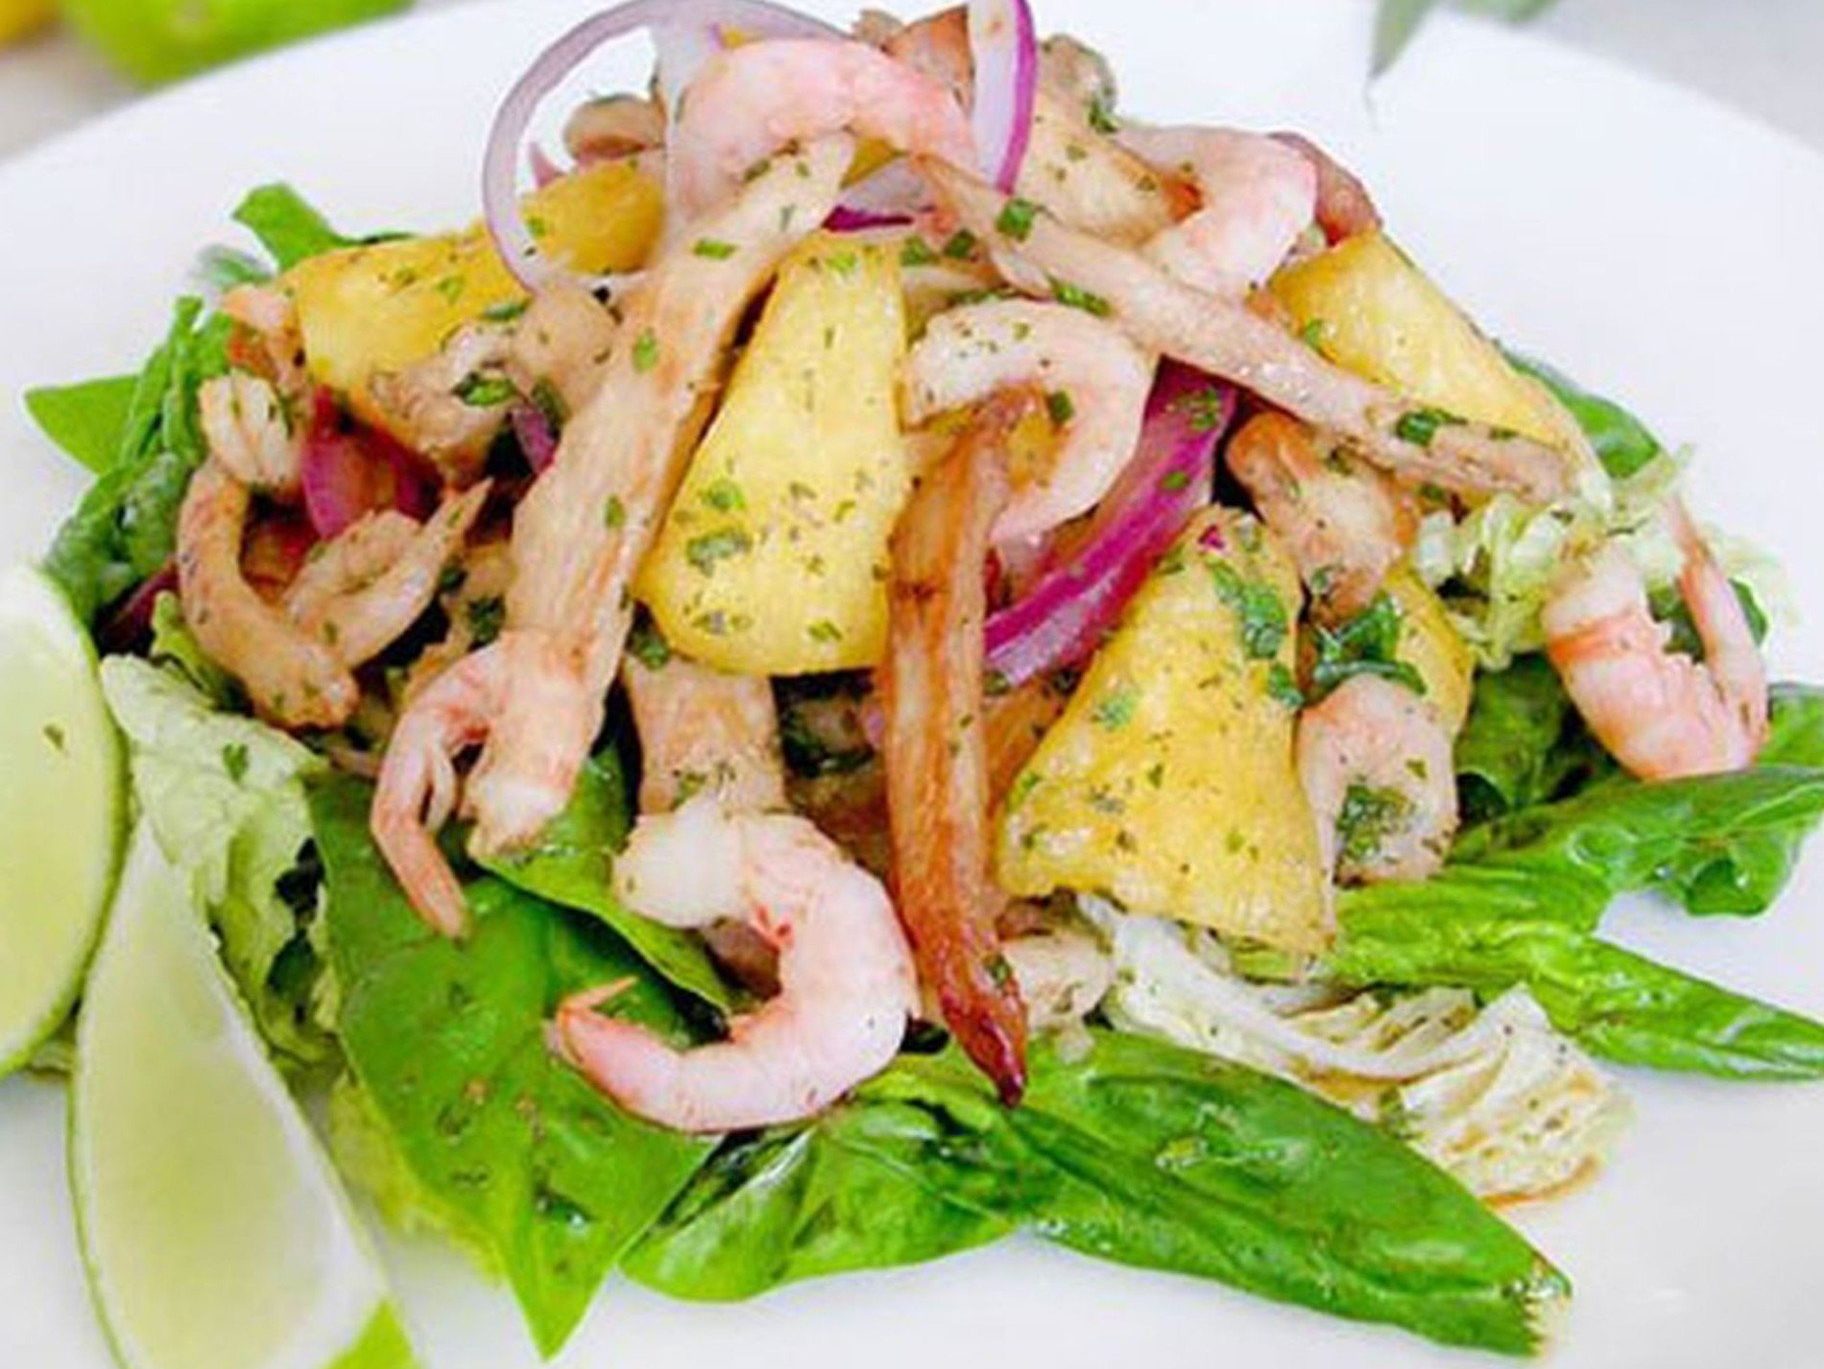 Тайский салат из индейки и креветок с острым соусом. Огромен мир вкусной еды из индейки и блюд из неё.